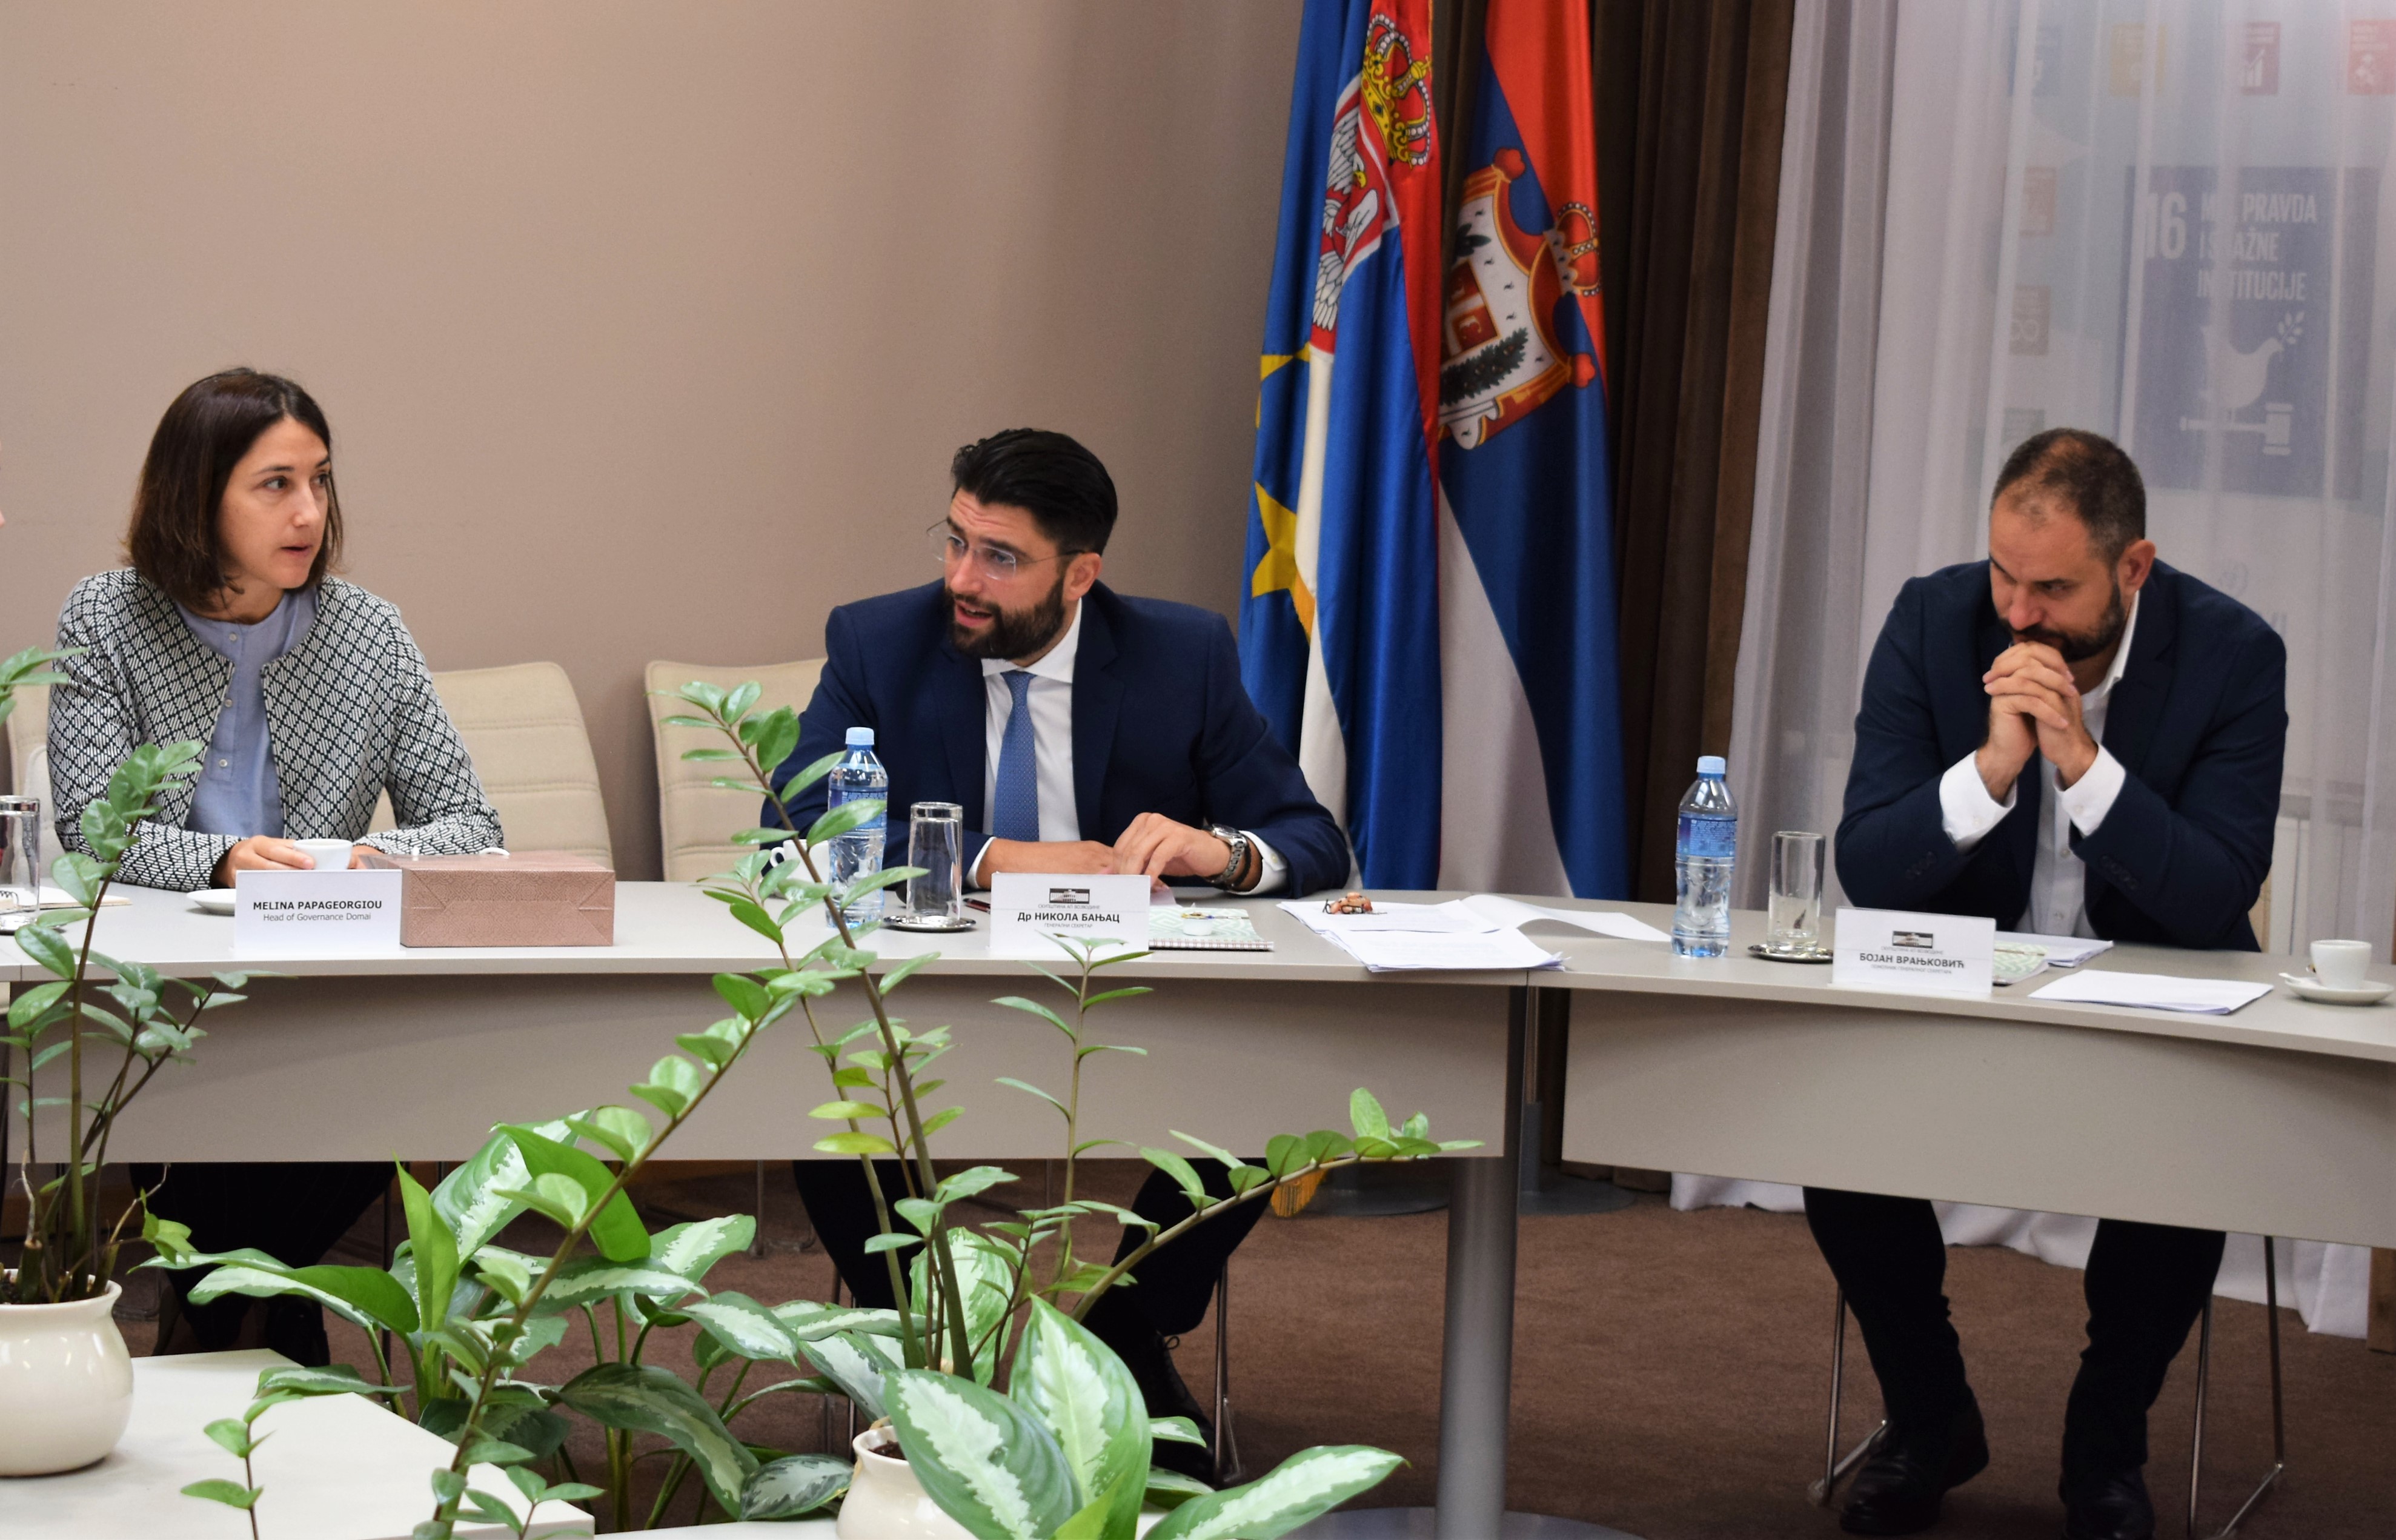 Делегације Швајцарске Канцеларије за сарадњу и УНДП Србија посетили Скупштину АП Војводине  